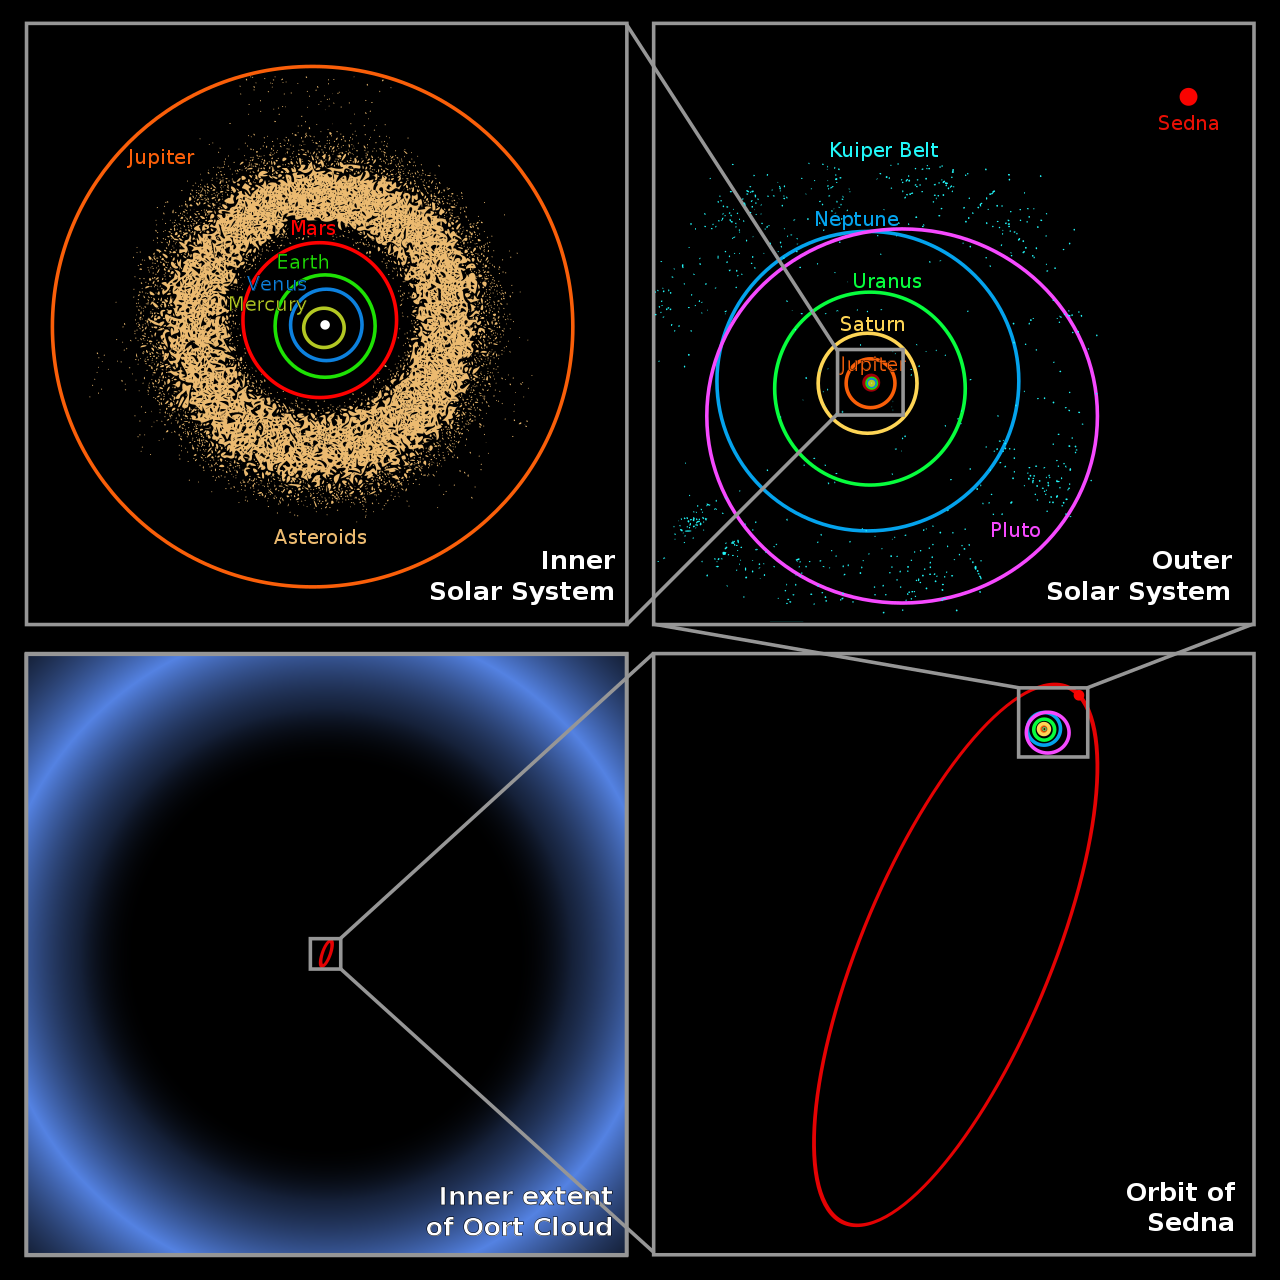 塞德娜運行軌道與系內其它主要天體的運行軌道對比